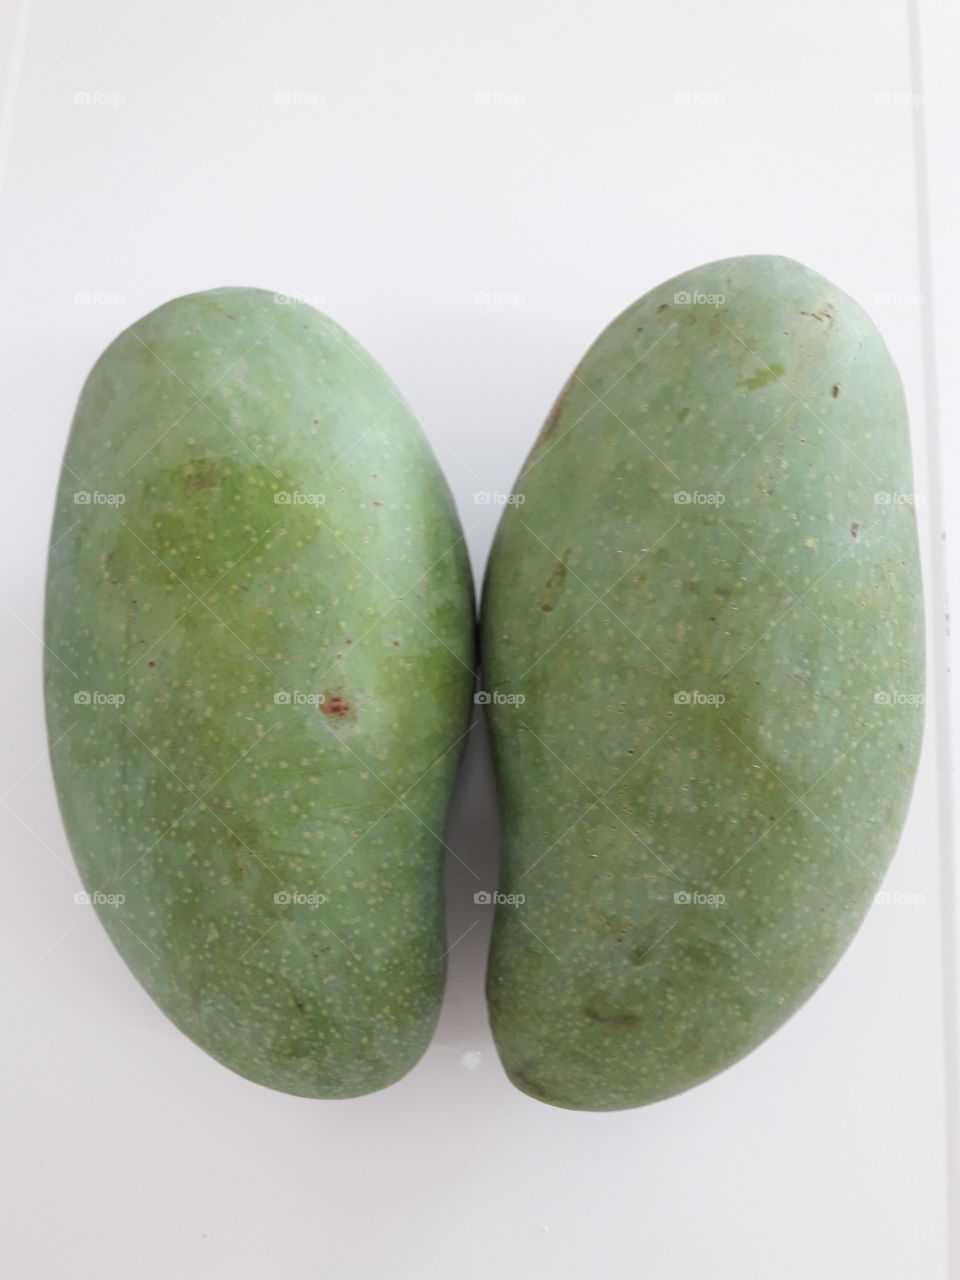 a pair of thai green mangoes "kiew sa wei"